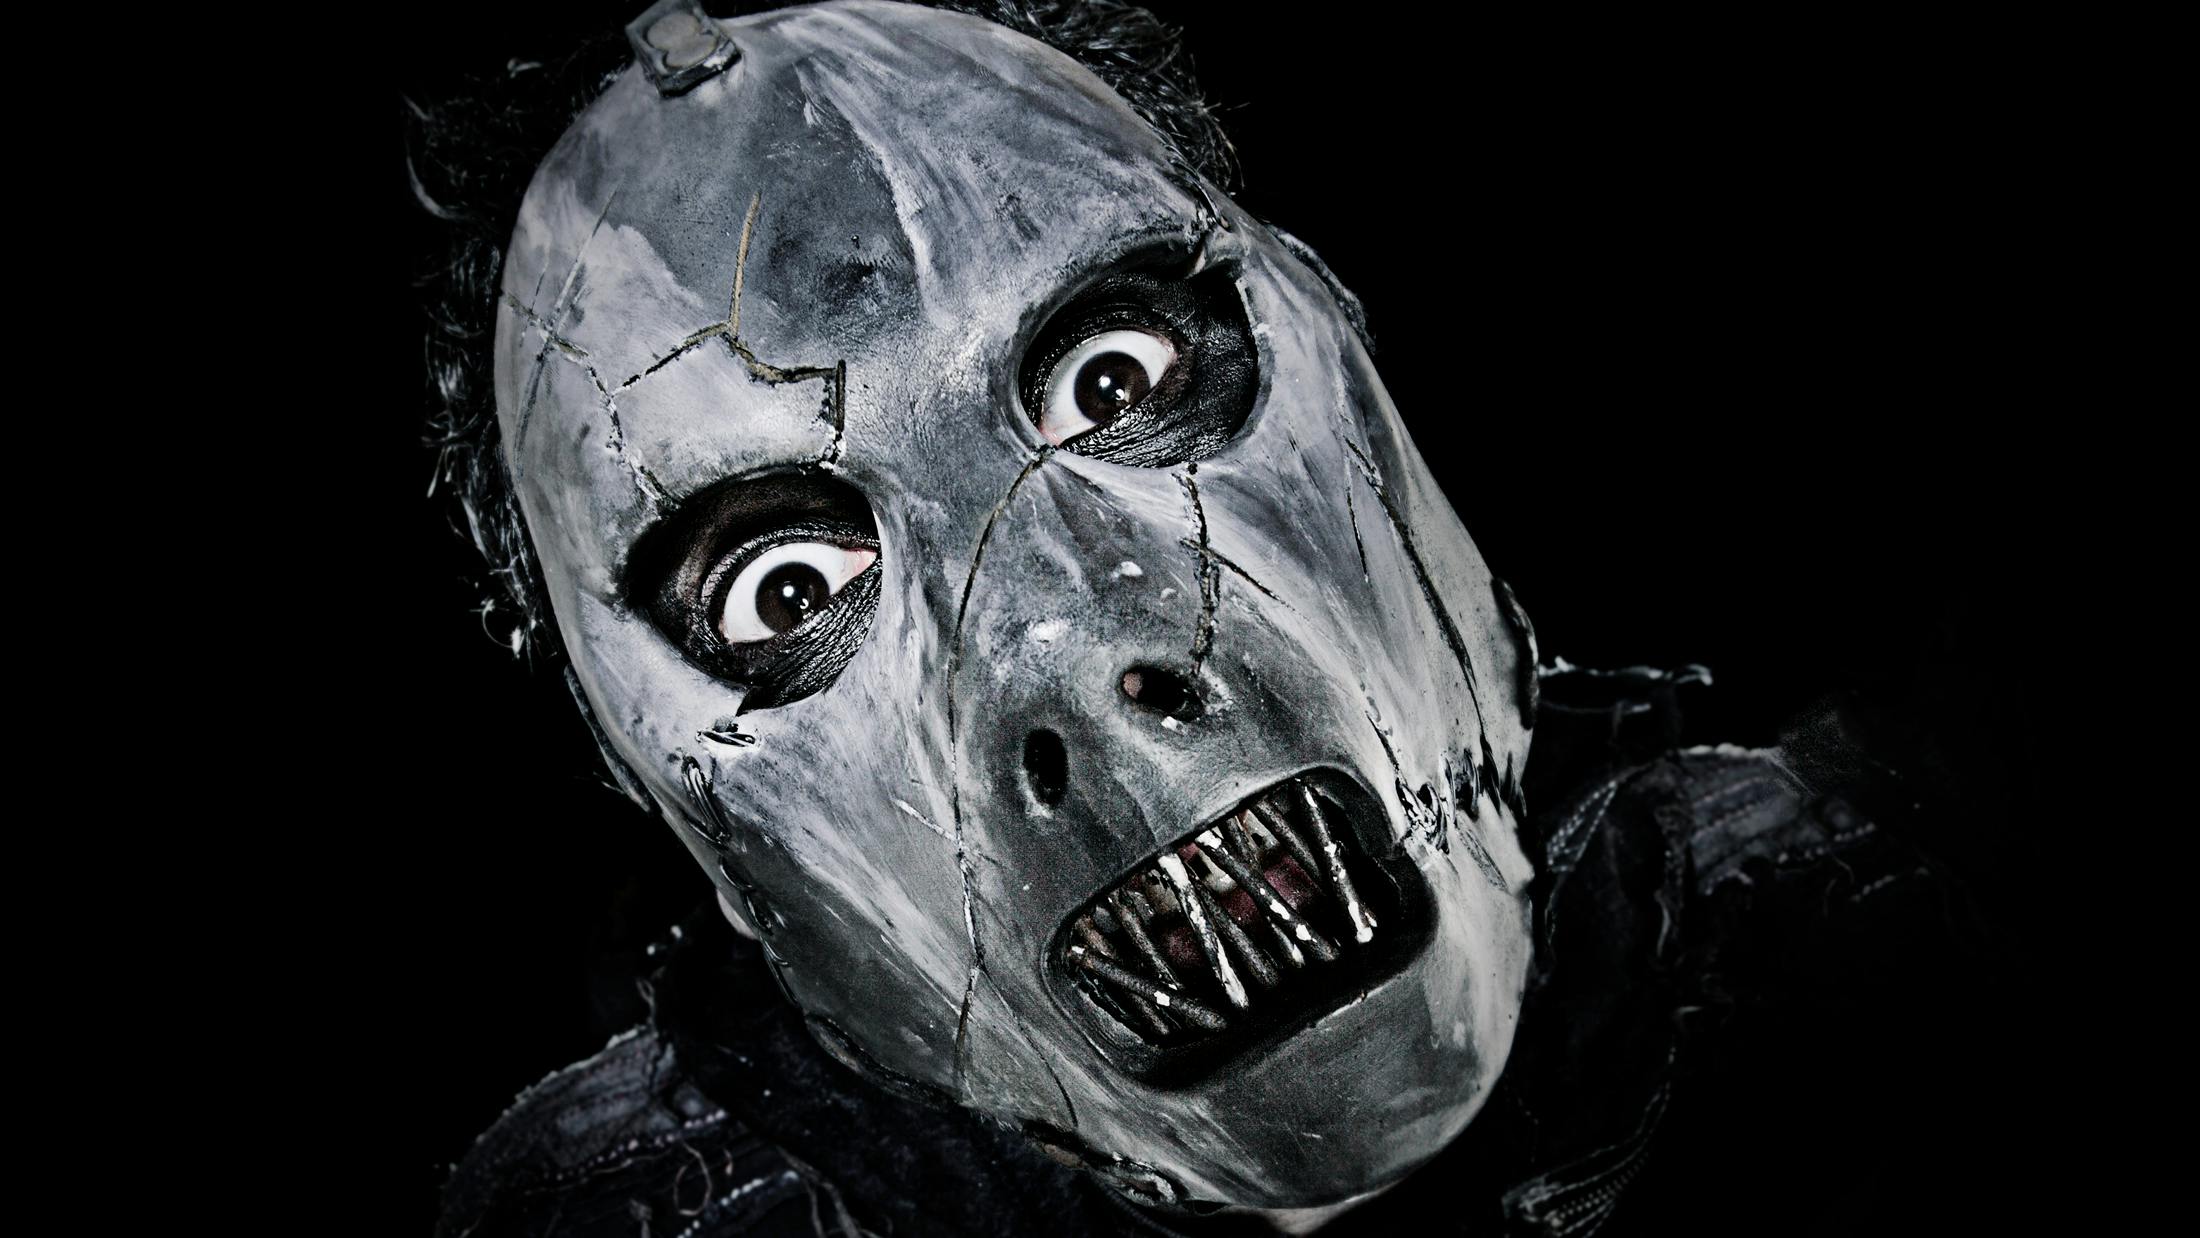 Slipknot: Paul Gray's 10 best songs